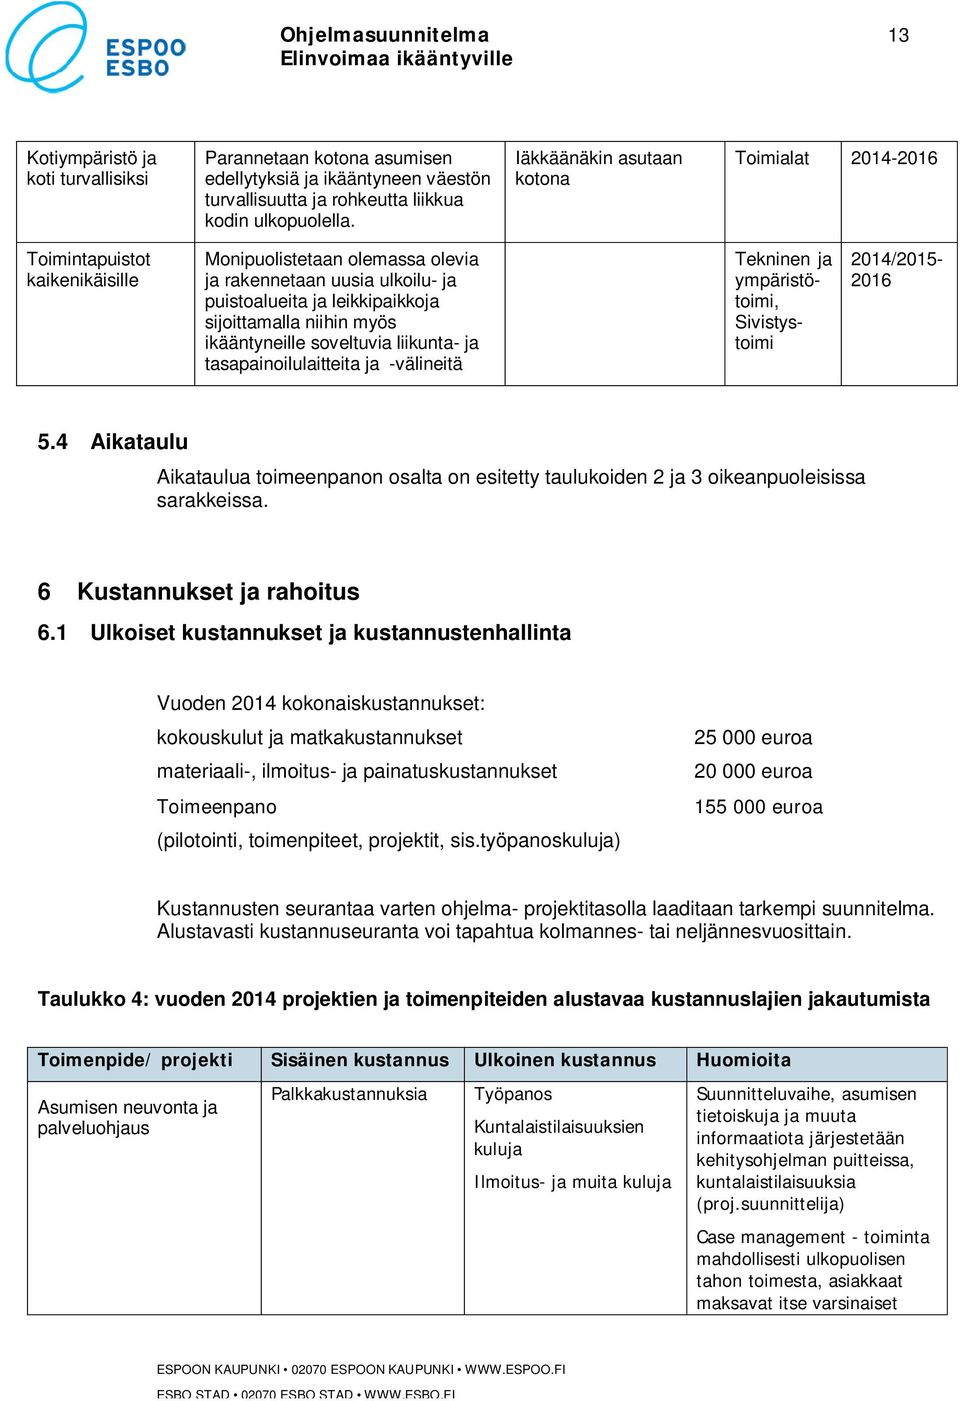 myös ikääntyneille soveltuvia liikunta- ja tasapainoilulaitteita ja -välineitä Tekninen ja ympäristötoimi, Sivistystoimi 2014/2015-2016 5.